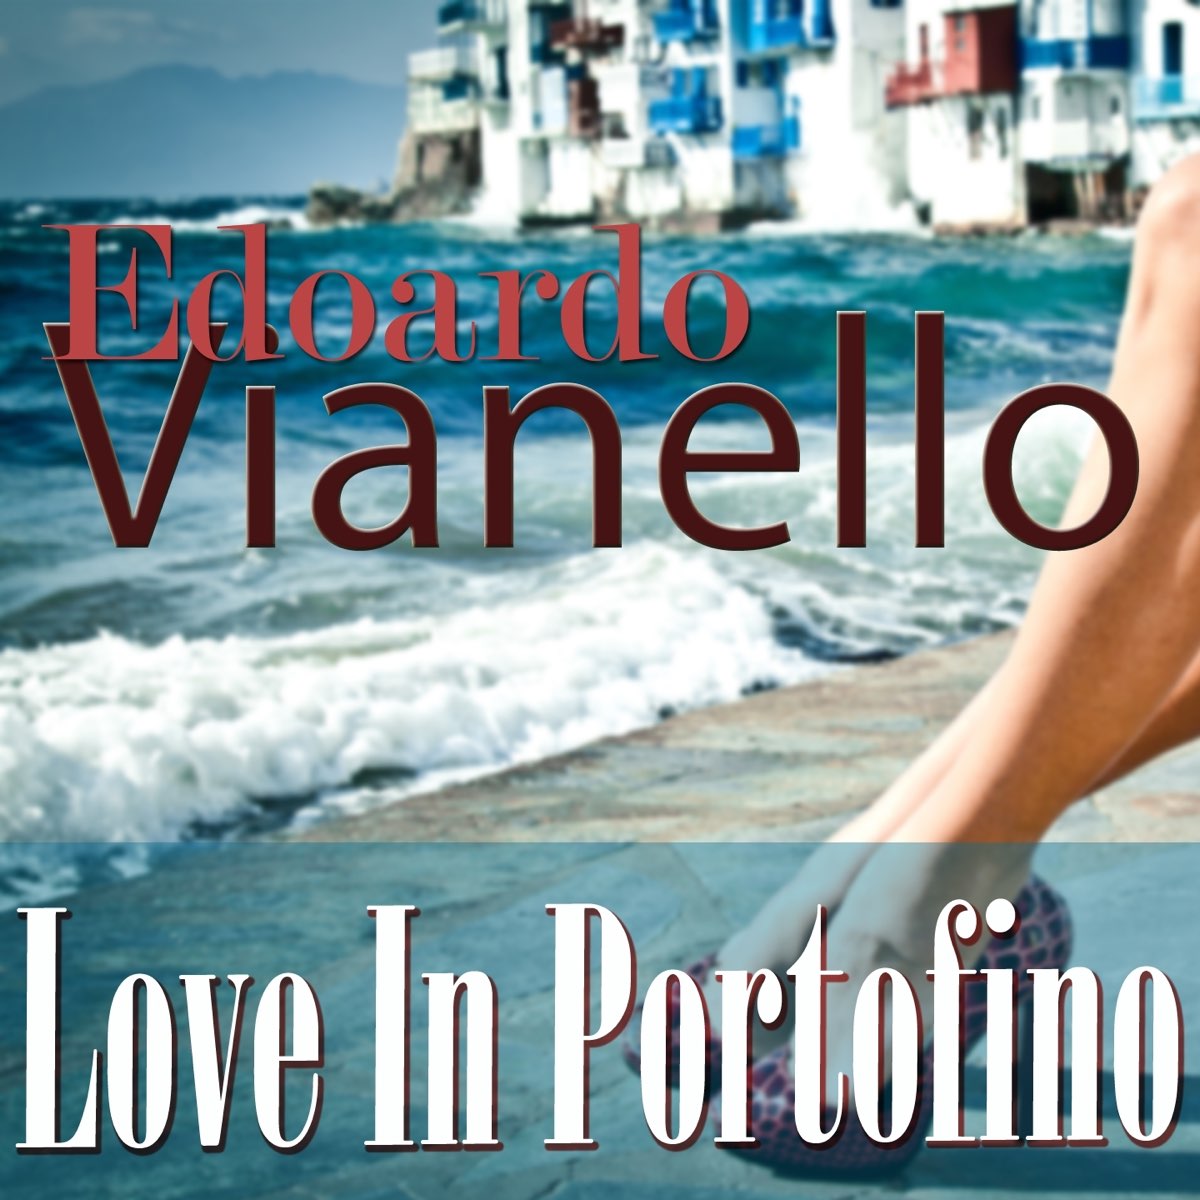 Love in Portofino (песня). Love in Portofino винил. Лов ин Портофино минус. Love in portofino